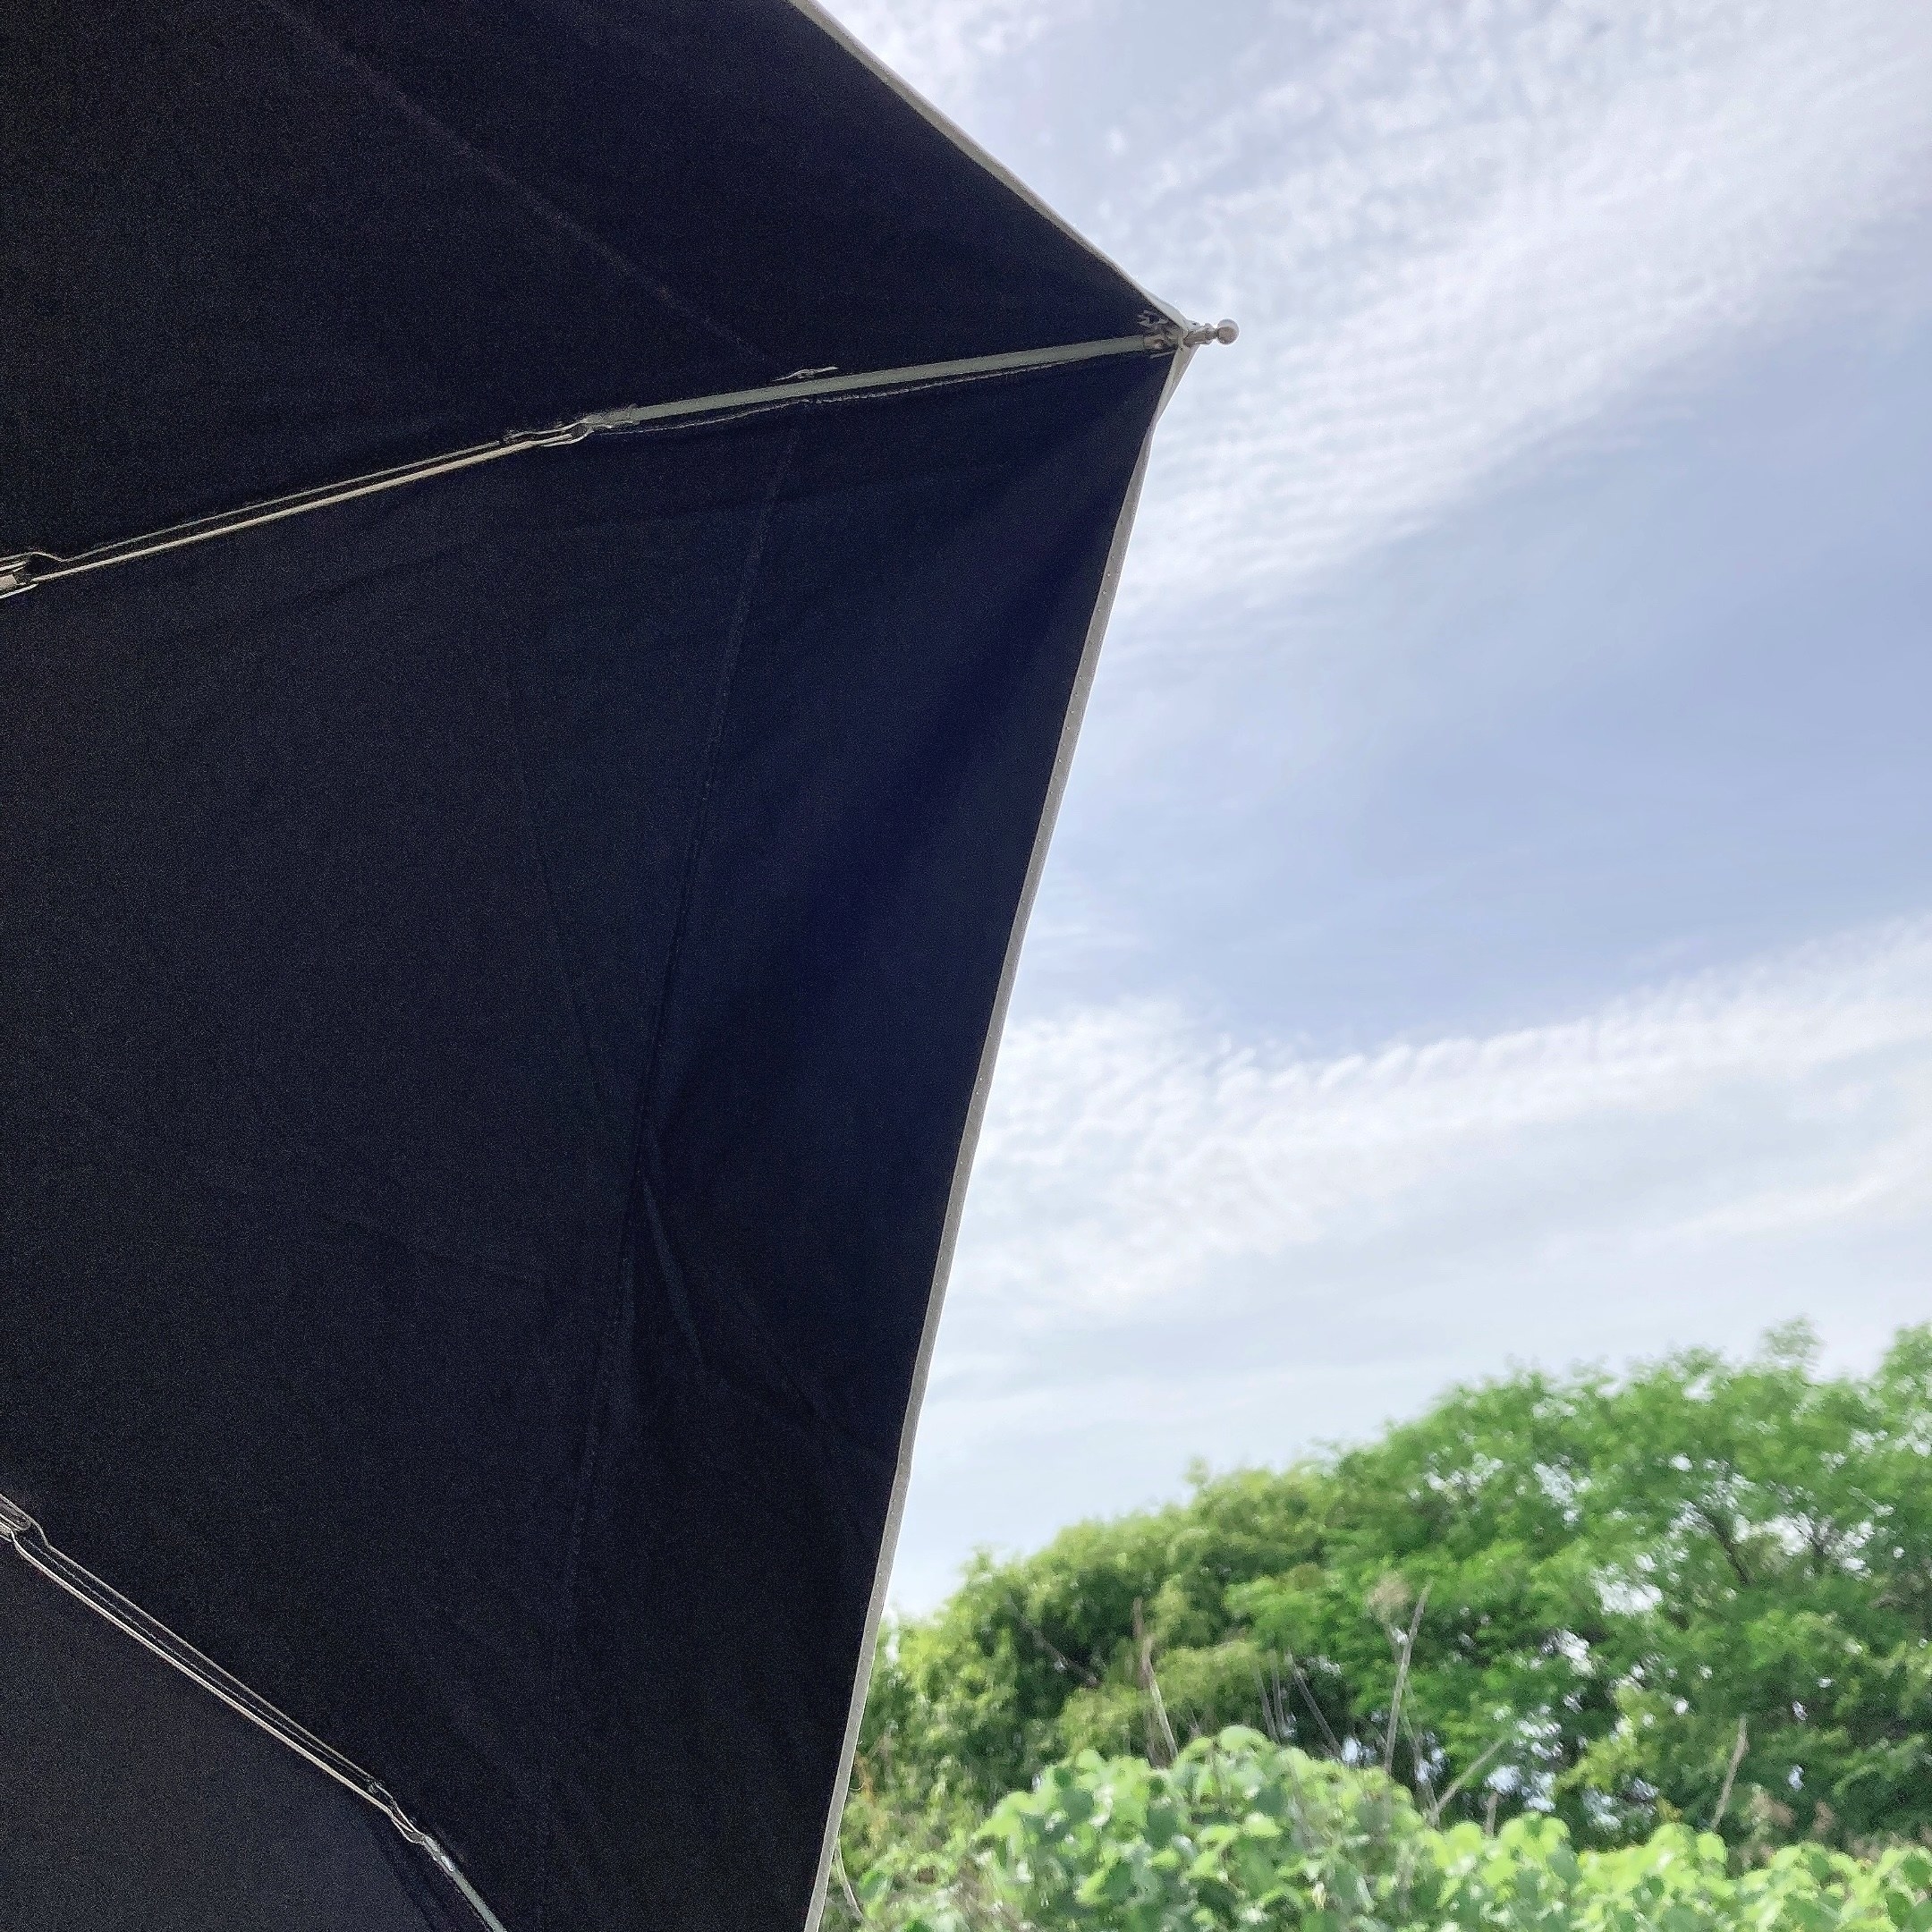 PLAZA（プラザ）で見つけたオススメの折りたたみ傘「Wpc. 日傘 切り継ぎ タイニー」